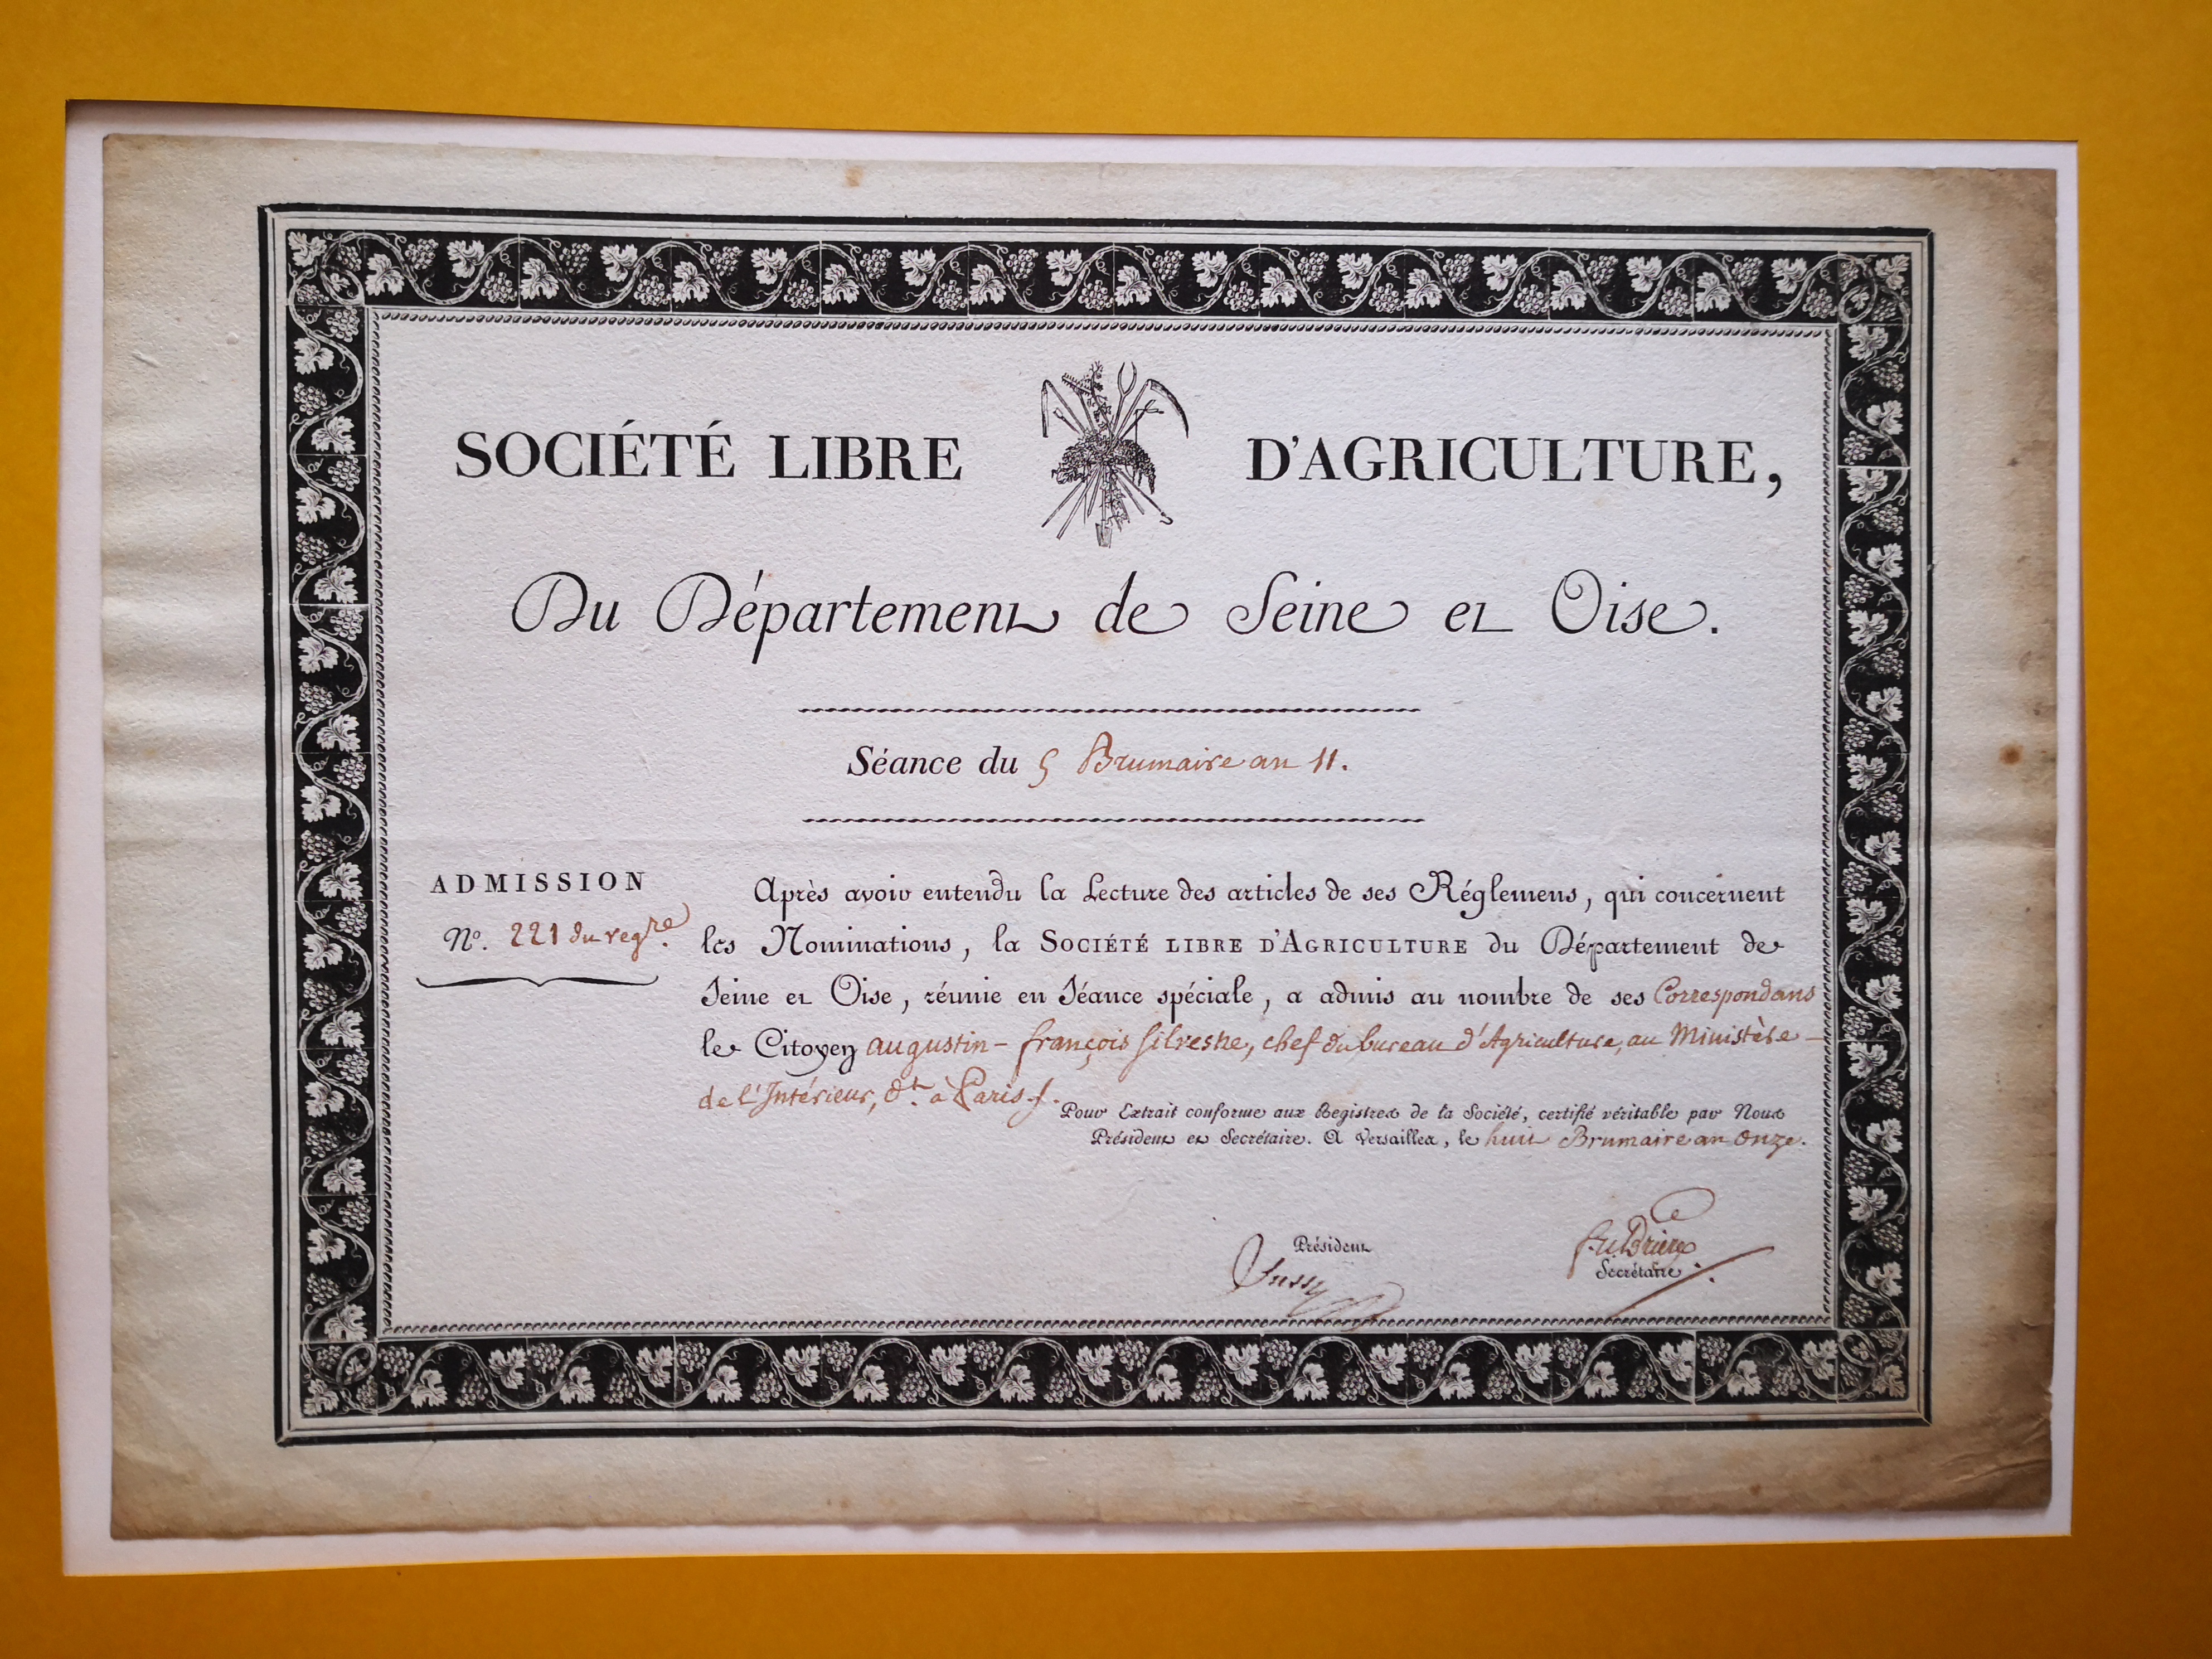  Diplôme de correspondant de la Société Libre d'Agriculture du département de la Seine et Oise décerné à Augustin-François de Silvestre - Document 1